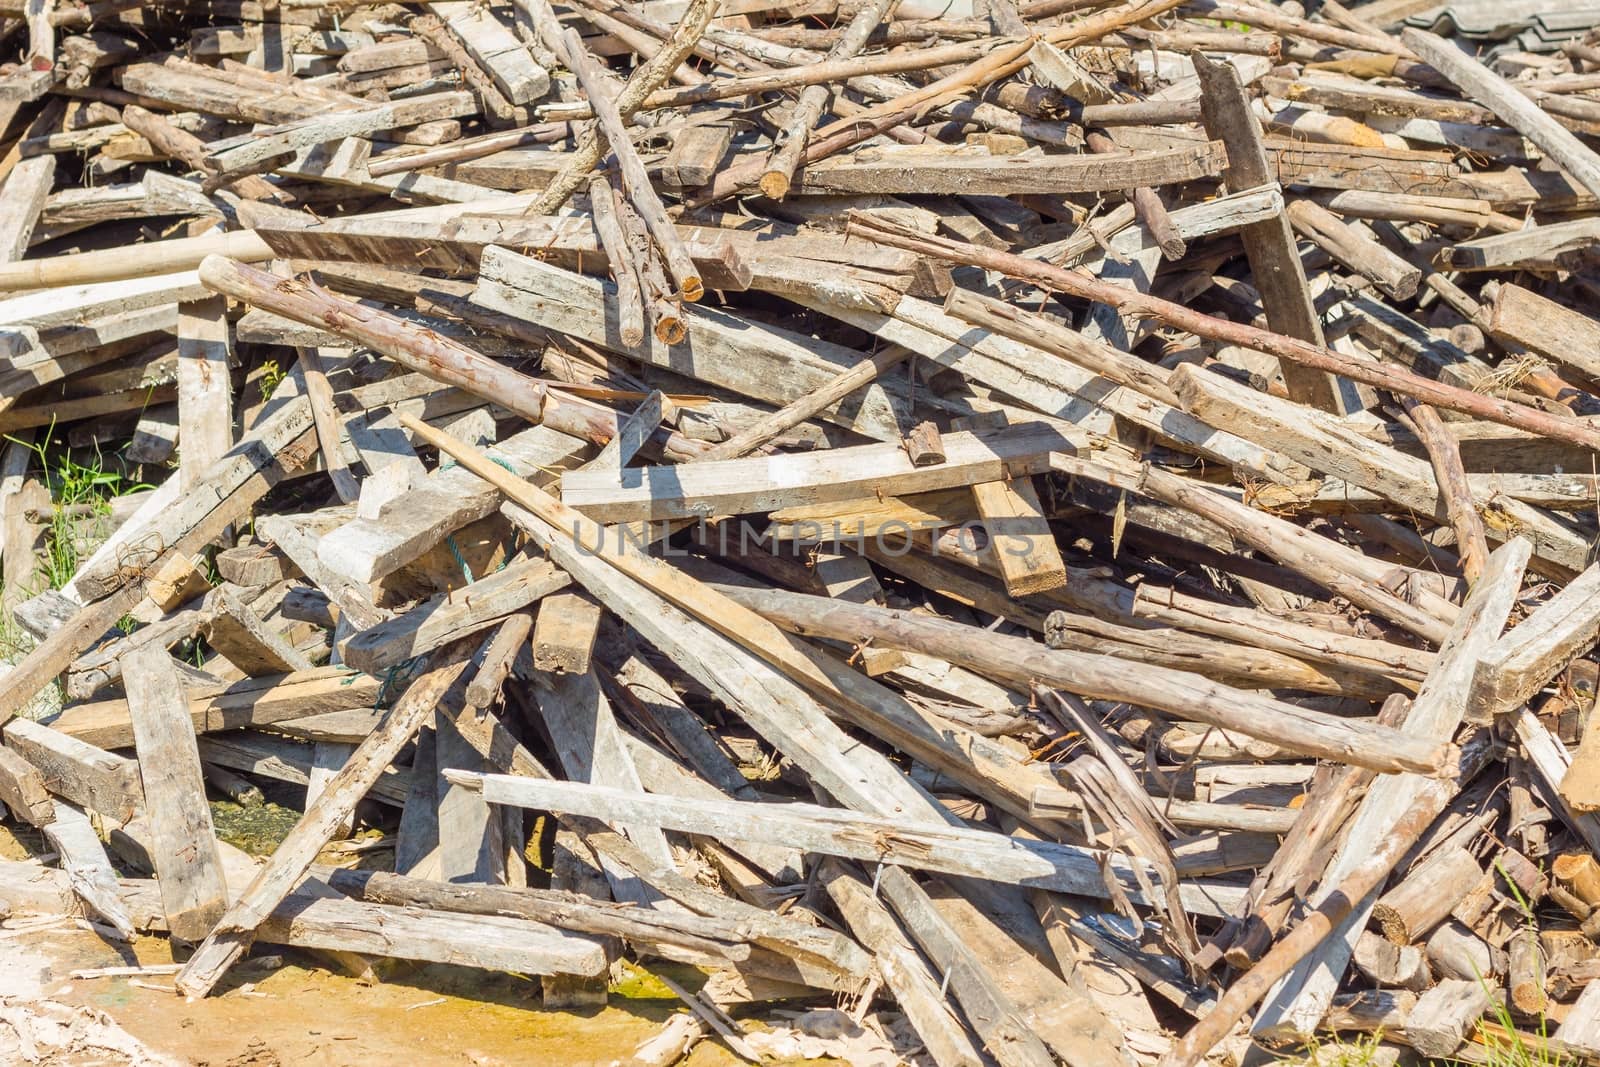 Waste wood pile abandon on the ground.